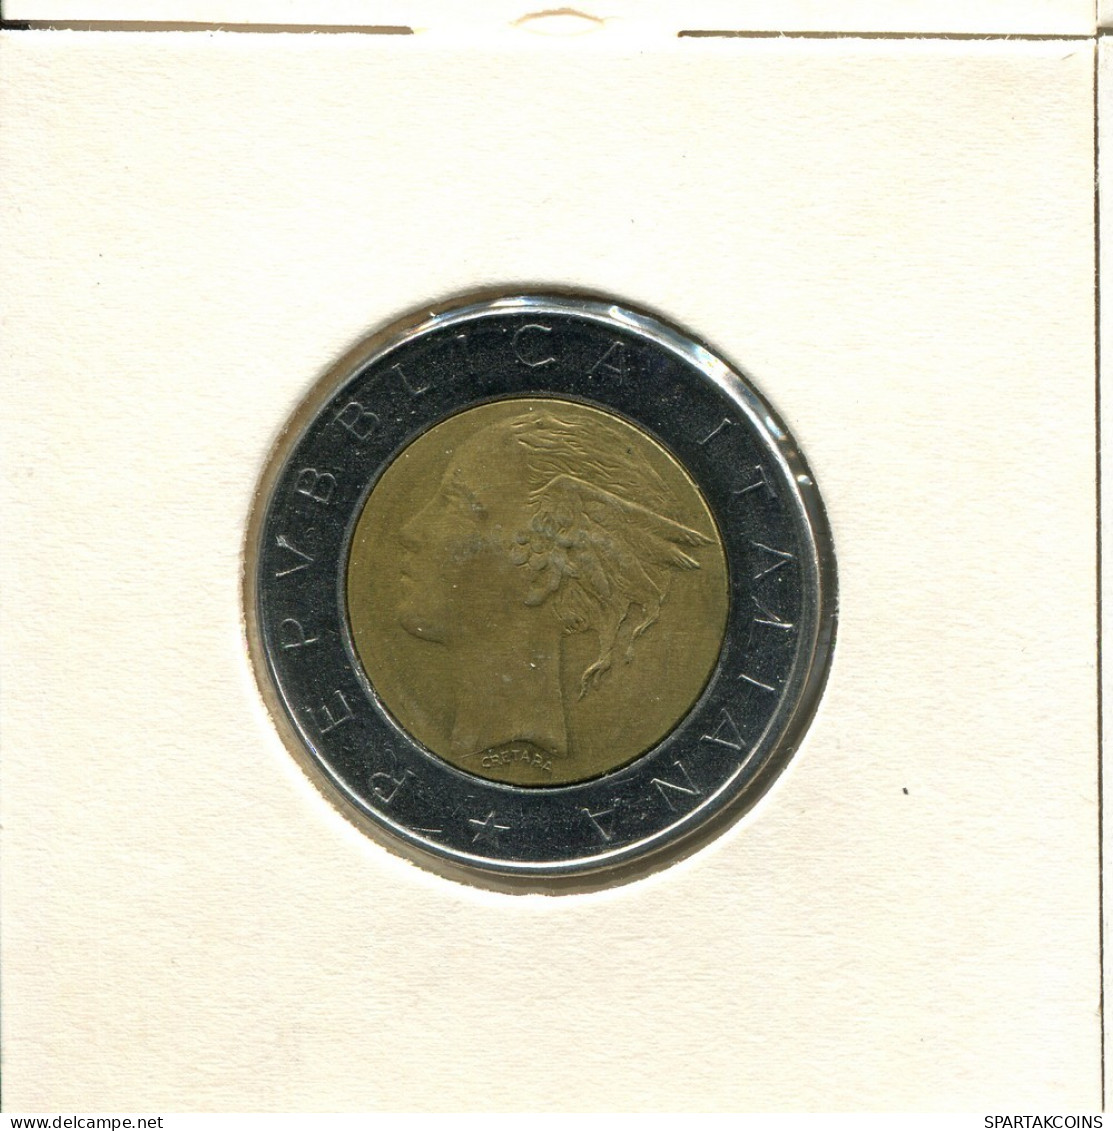 500 LIRE 1982 ITALY Coin BIMETALLIC #AT796.U.A - 500 Lire